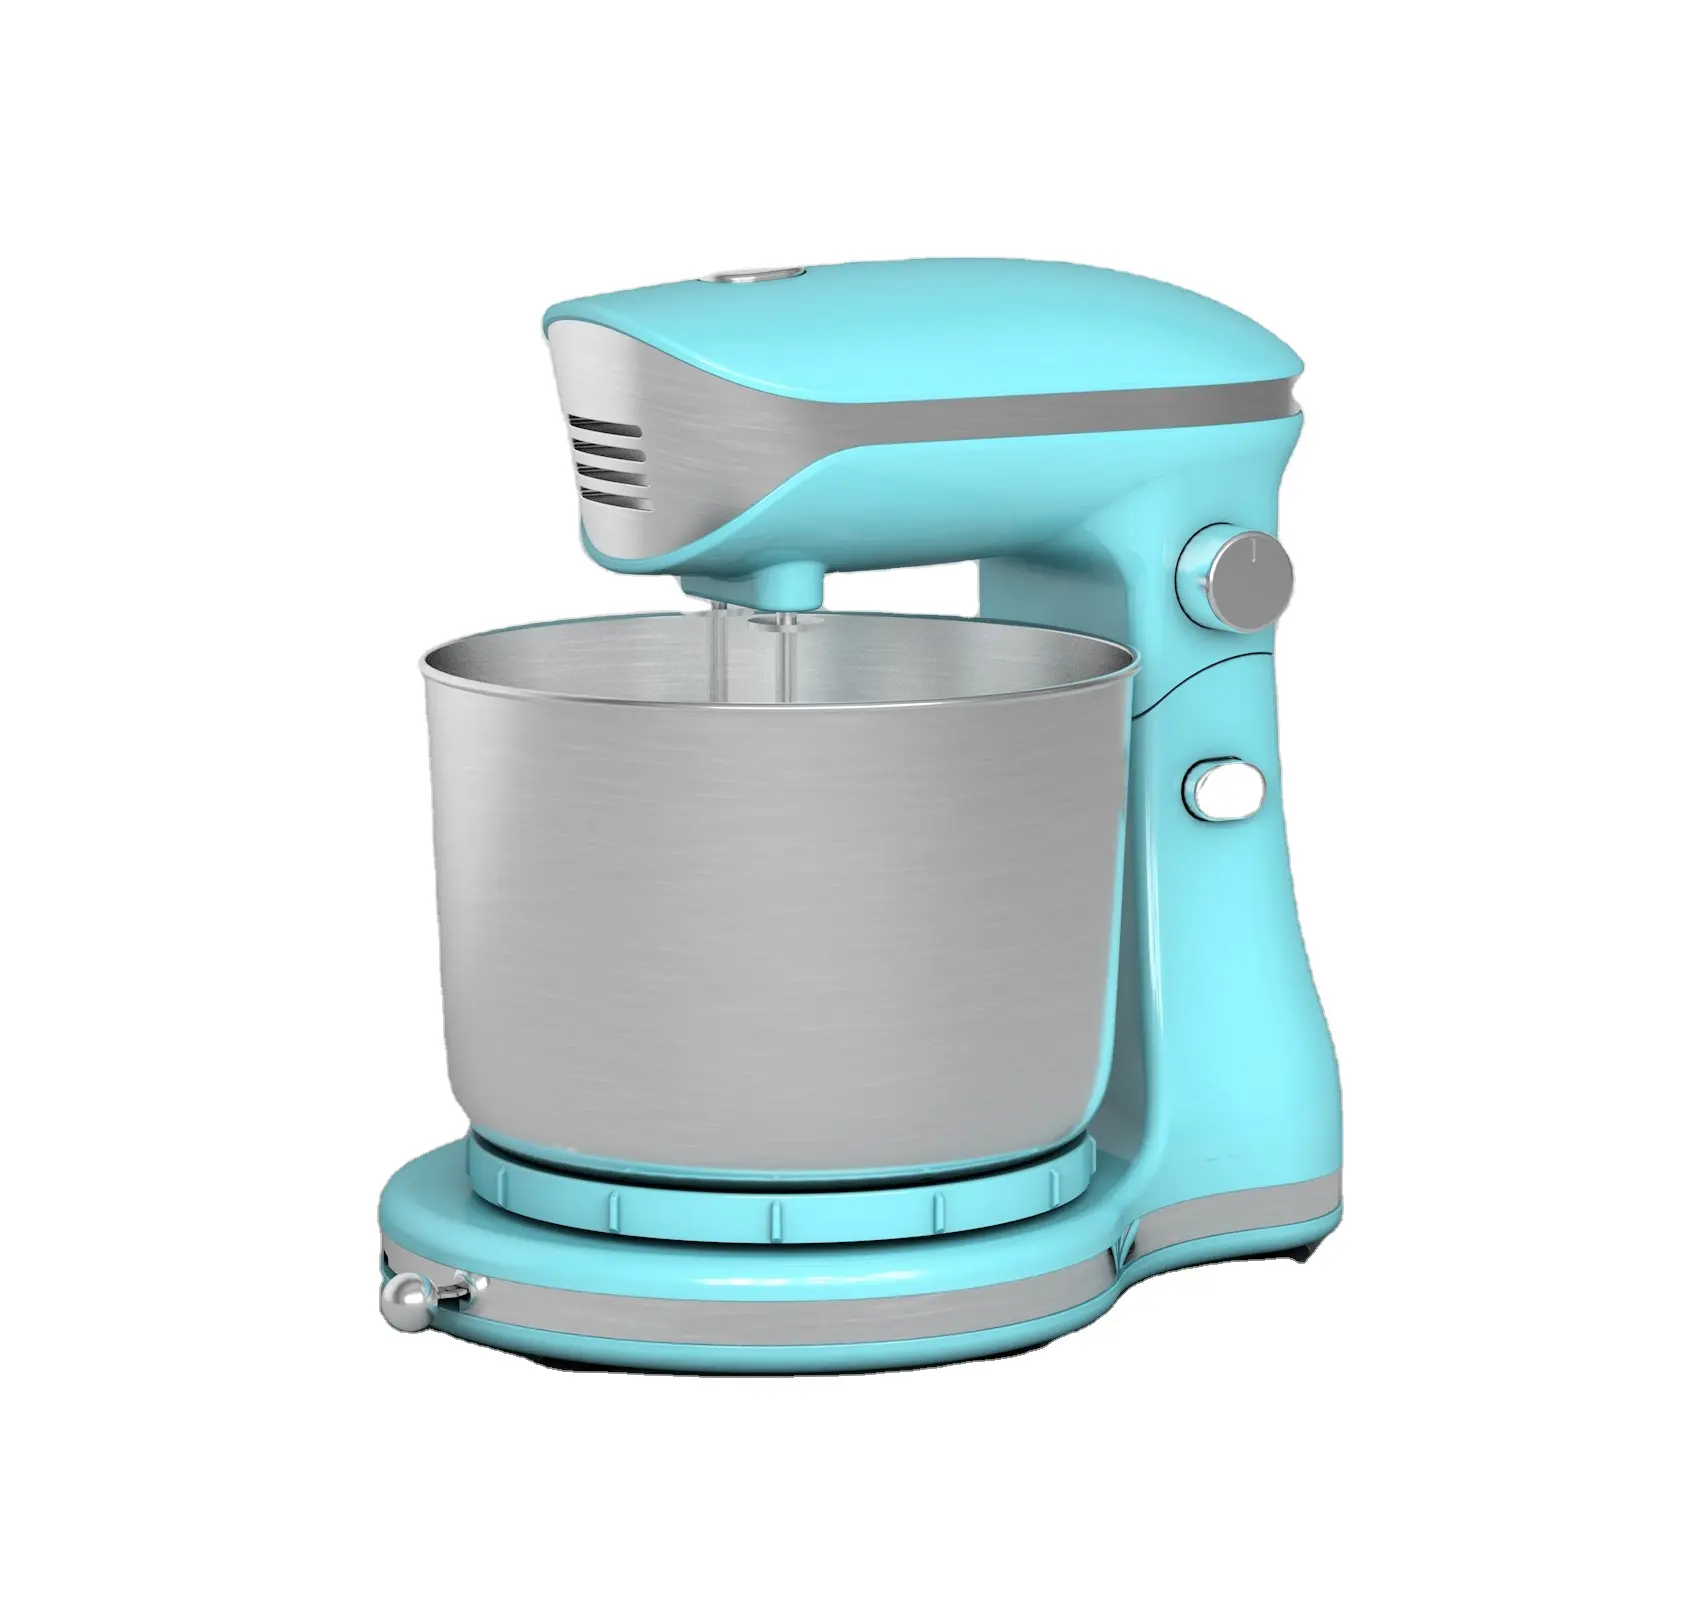 Novo Projetado Eletrodomésticos De Cozinha Stand Food Mixers Multi Funcional Processador De Alimentos 300w Compact Stand Mixer